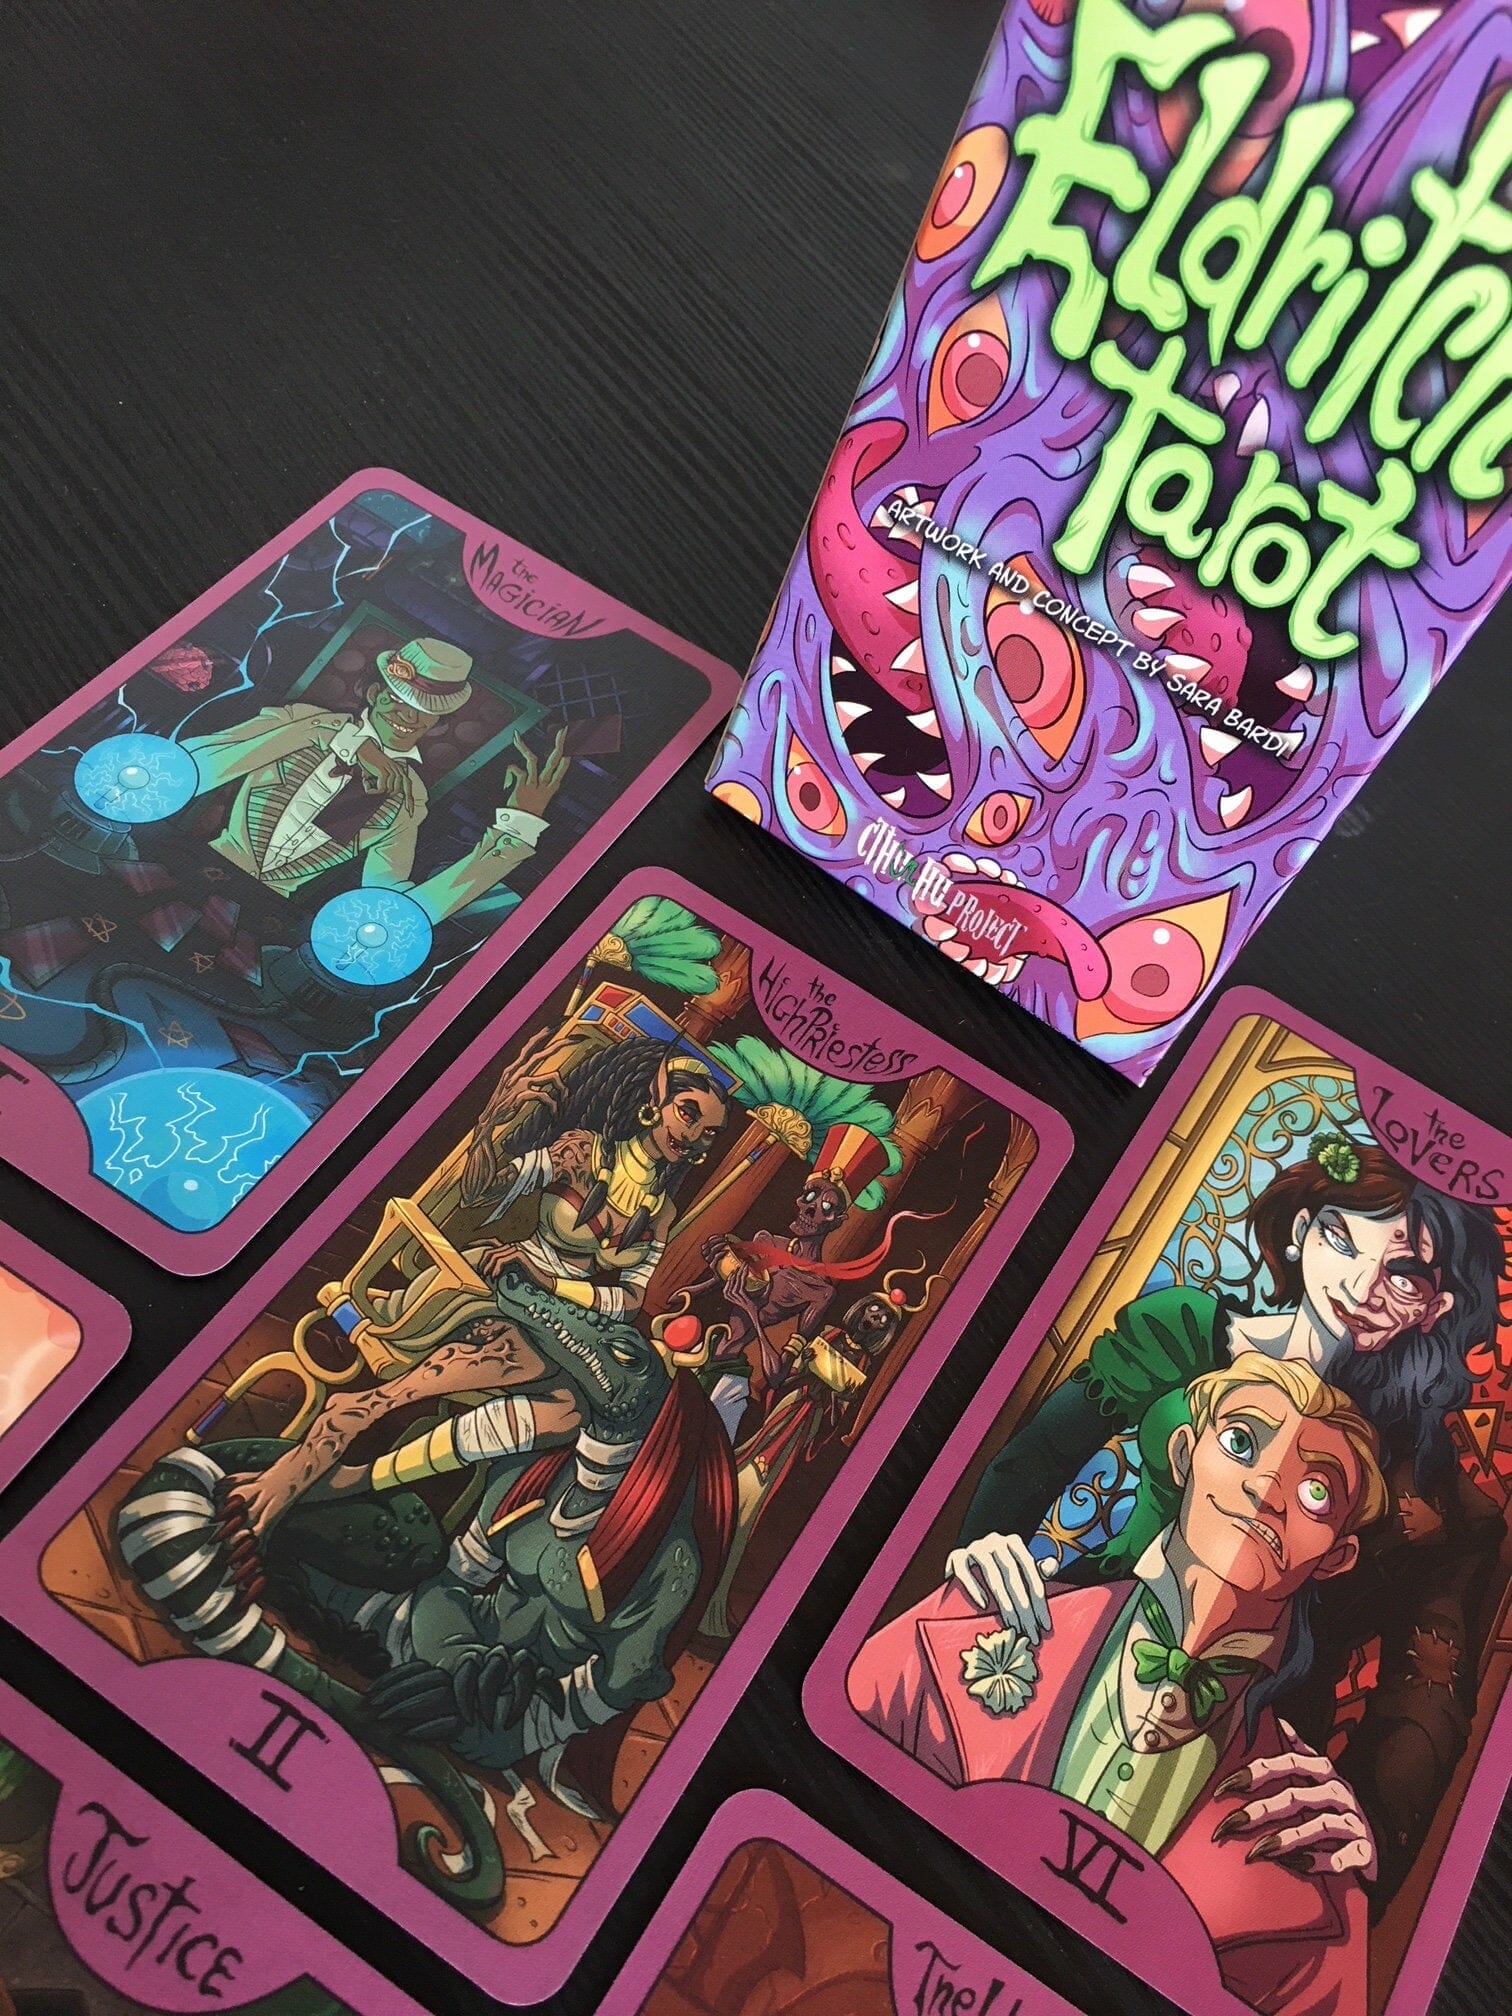 Lovecraft themed tarot cards